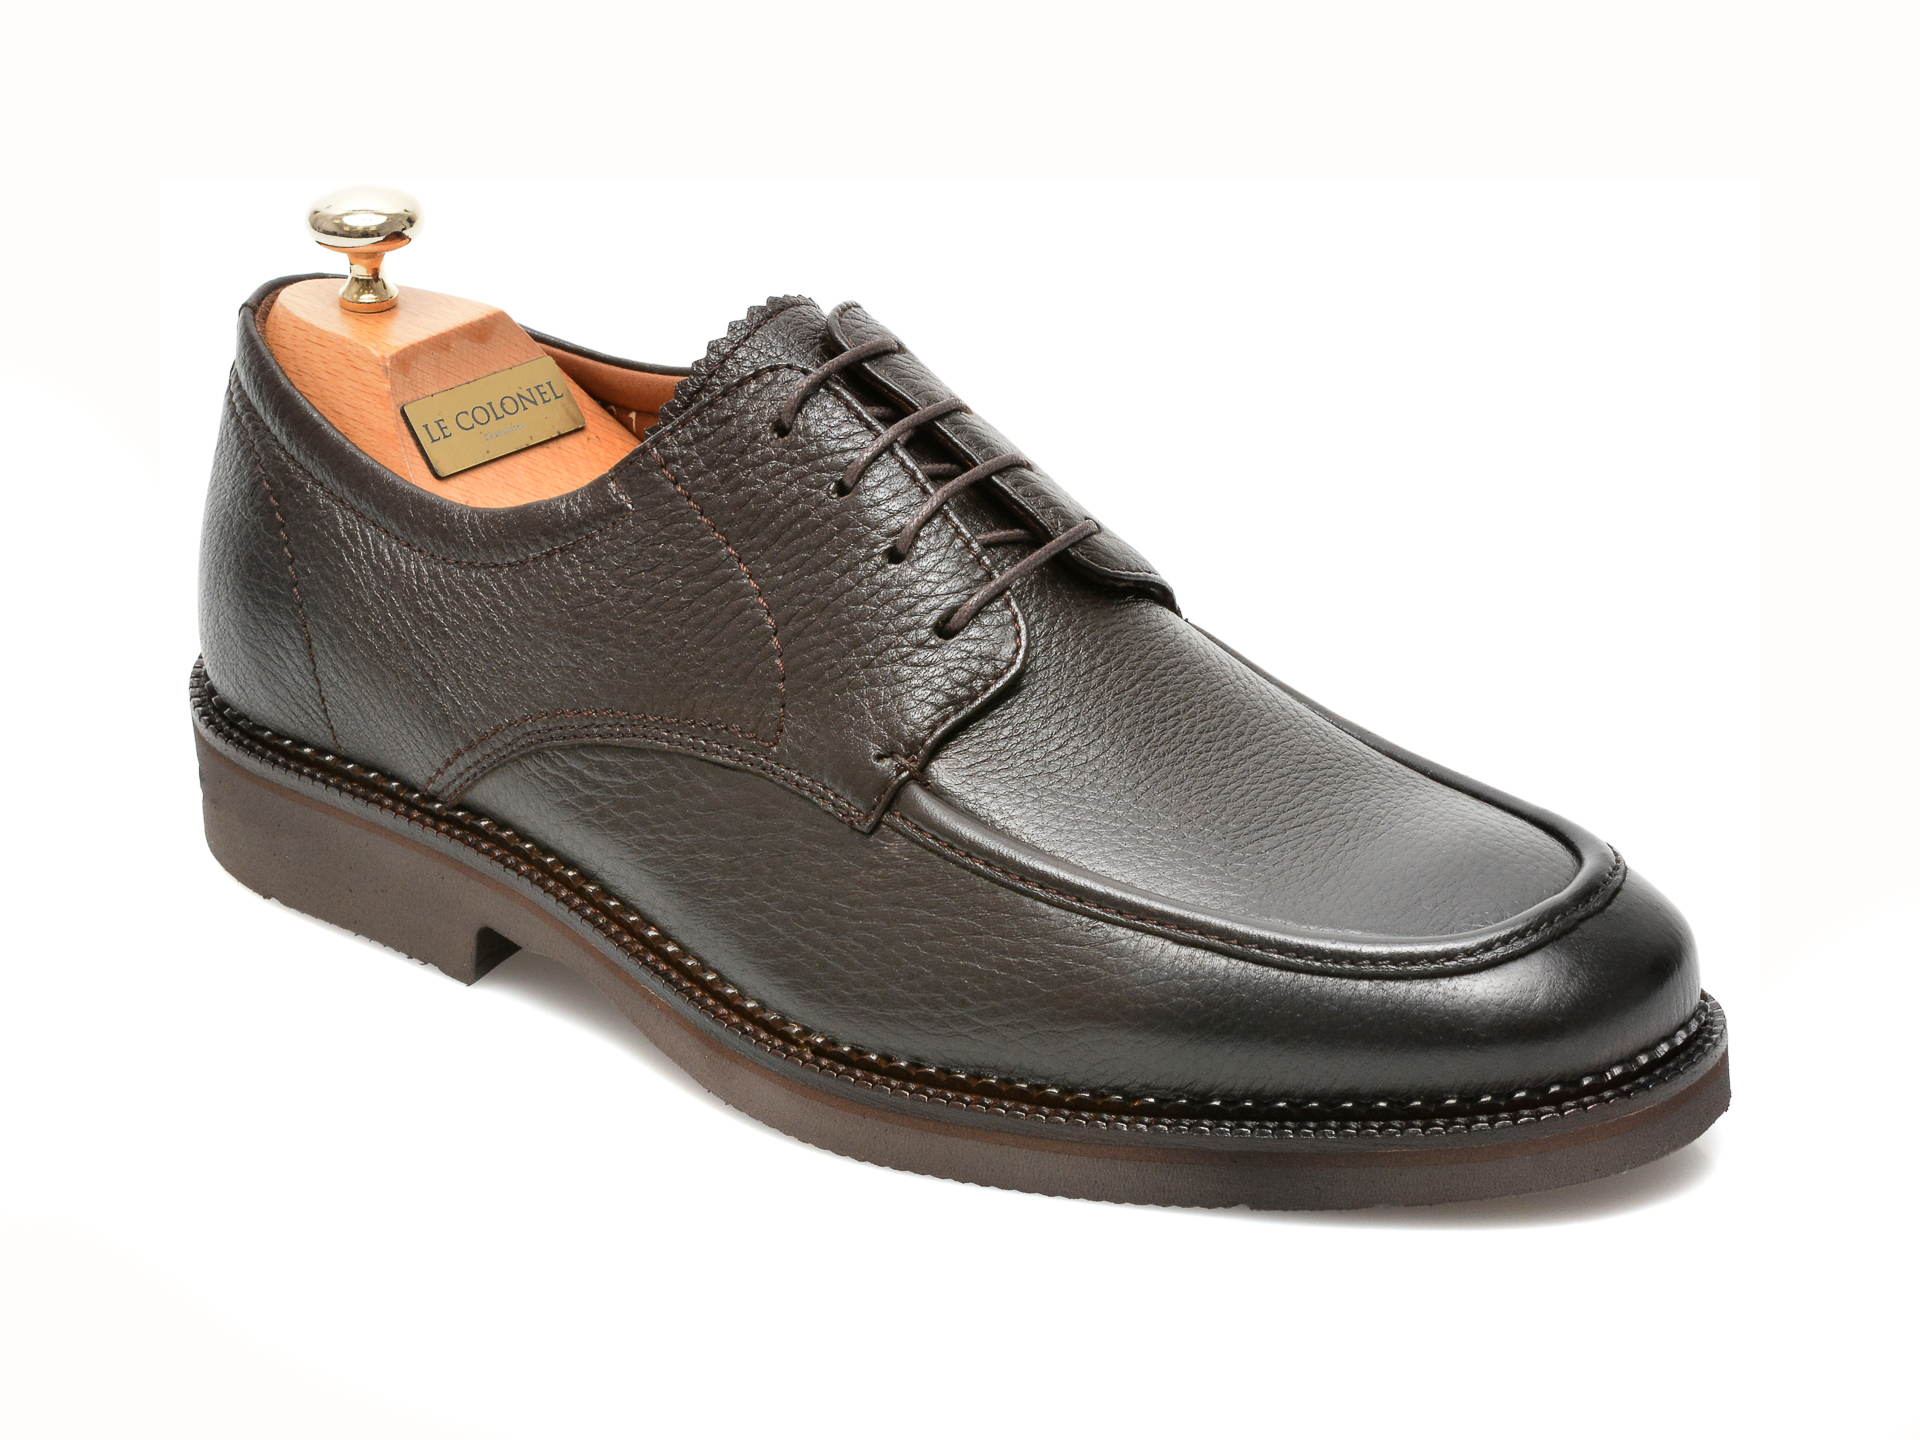 Pantofi LE COLONEL maro, 63501, din piele naturala Le Colonel imagine noua